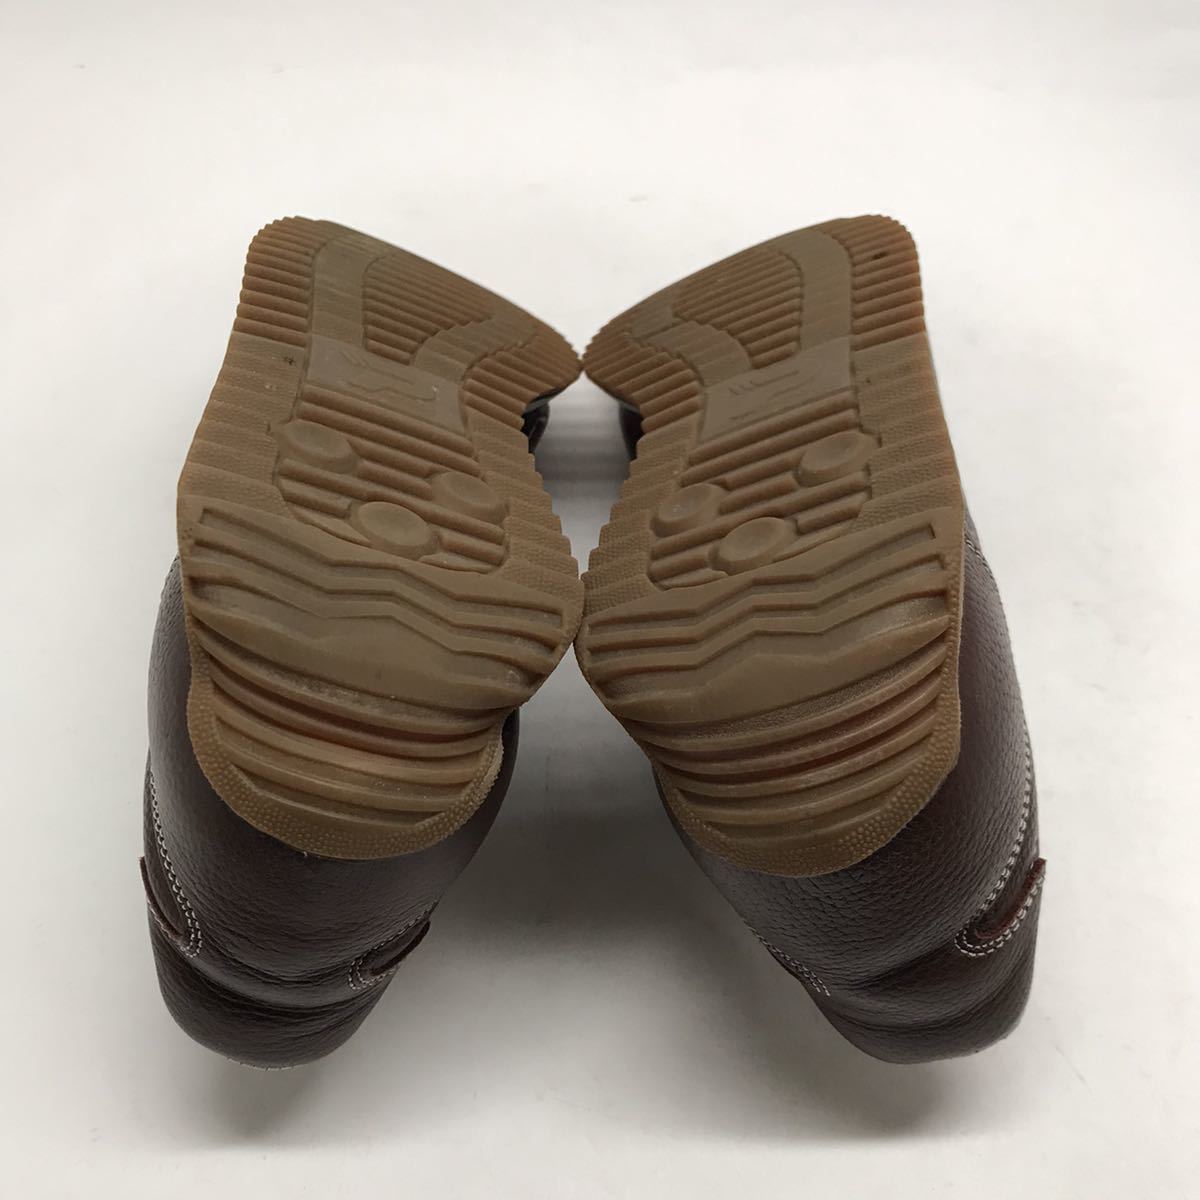  быстрое решение! стандартный! сделано в Японии PATRICK SANGER CHO размер 38 21333 / Patrick спортивные туфли кожа солнечный ga- шоко марафон 